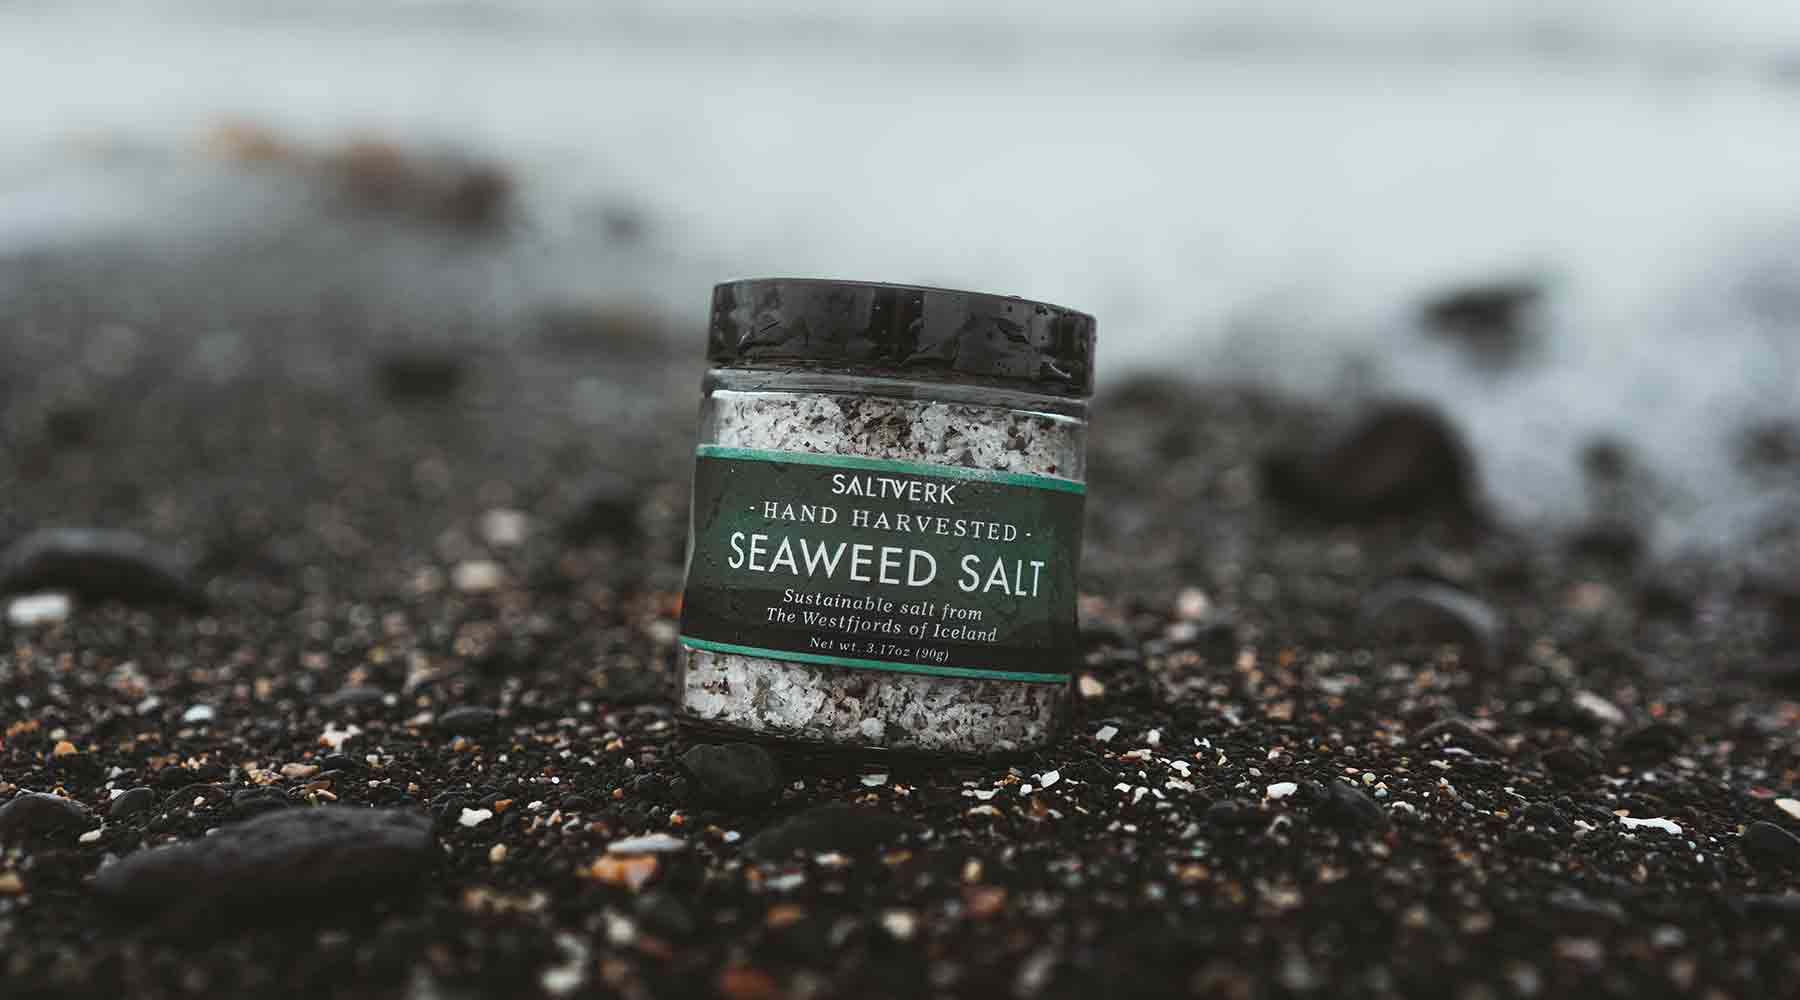 Seaweed Sea Salt